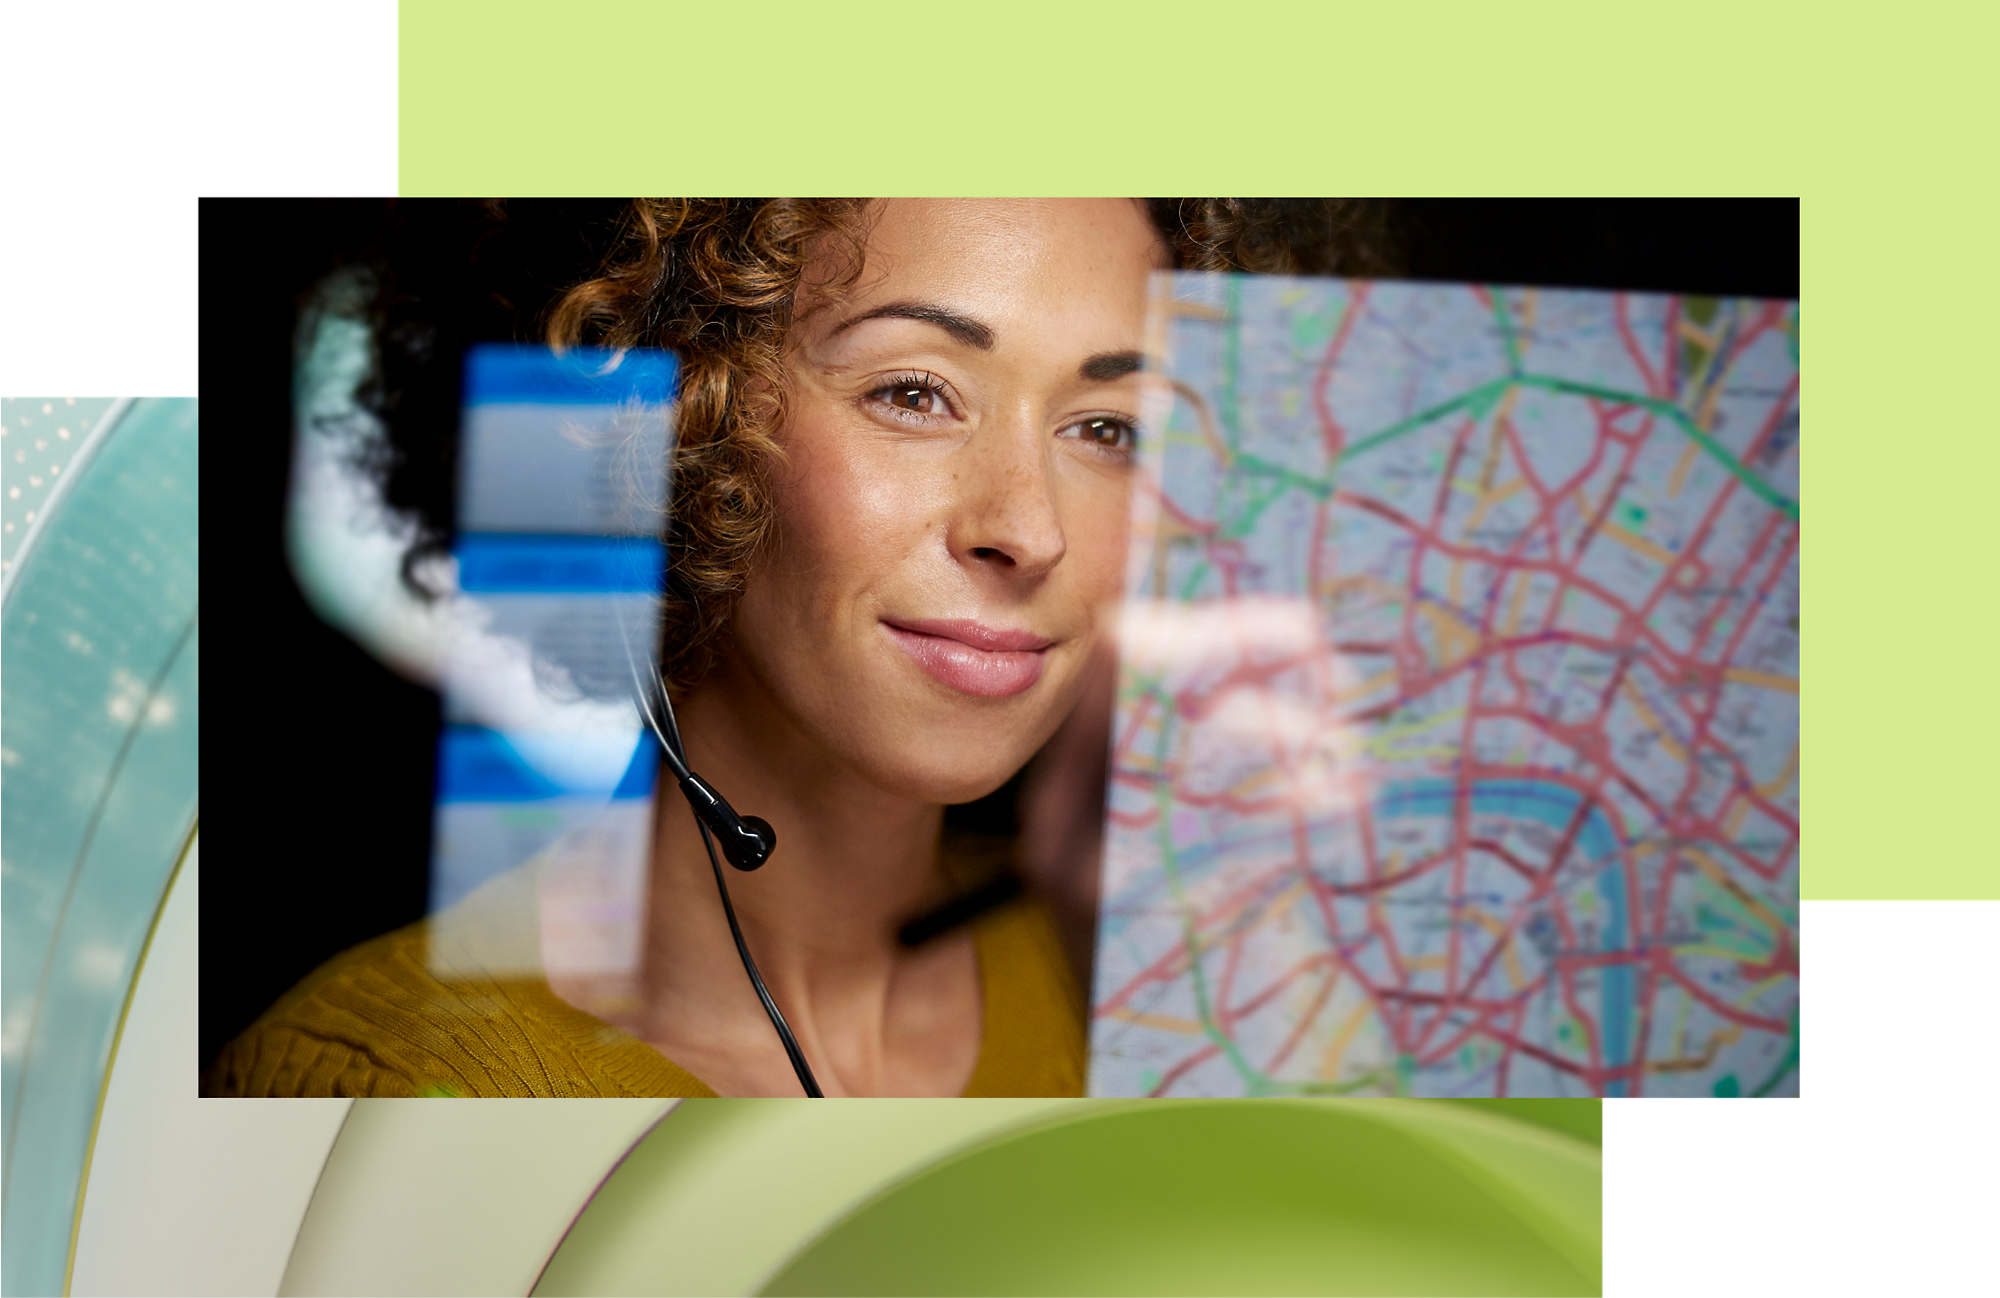 Un representante del servicio de atención al cliente con auriculares sonríe mientras mira un mapa en una pantalla digital